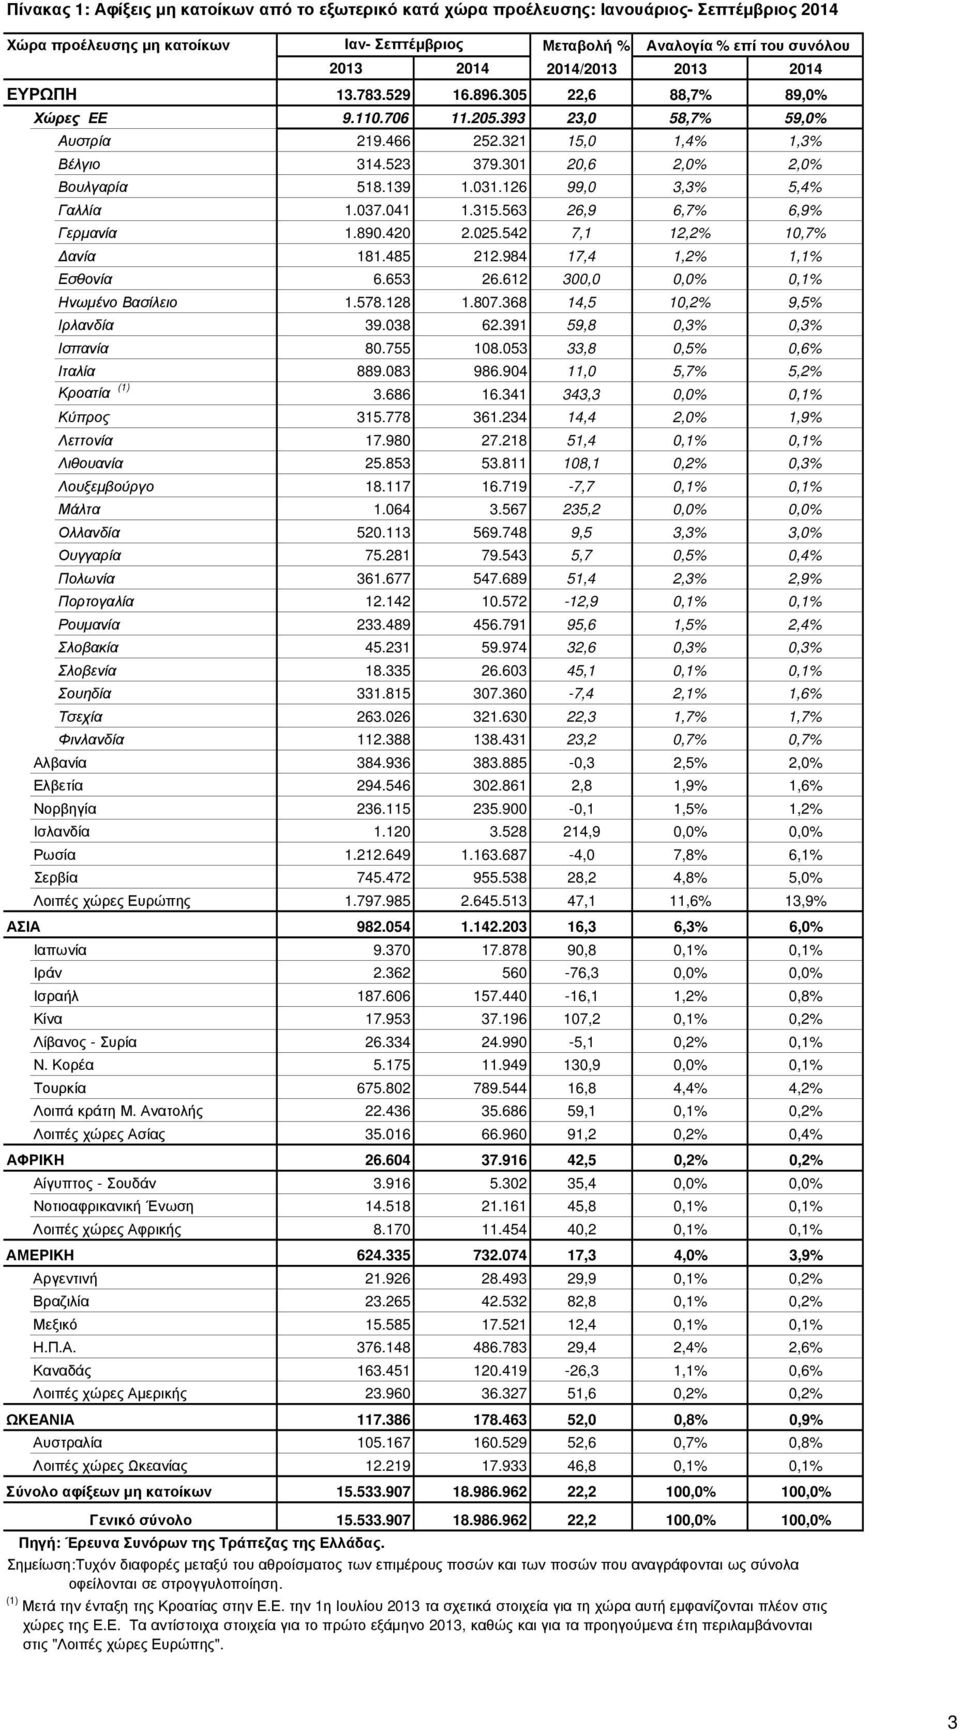 126 99,0 3,3% 5,4% Γαλλία 1.037.041 1.315.563 26,9 6,7% 6,9% Γερµανία 1.890.420 2.025.542 7,1 12,2% 10,7% ανία 181.485 212.984 17,4 1,2% 1,1% Εσθονία 6.653 26.612 300,0 0,0% 0,1% Ηνωµένο Βασίλειο 1.